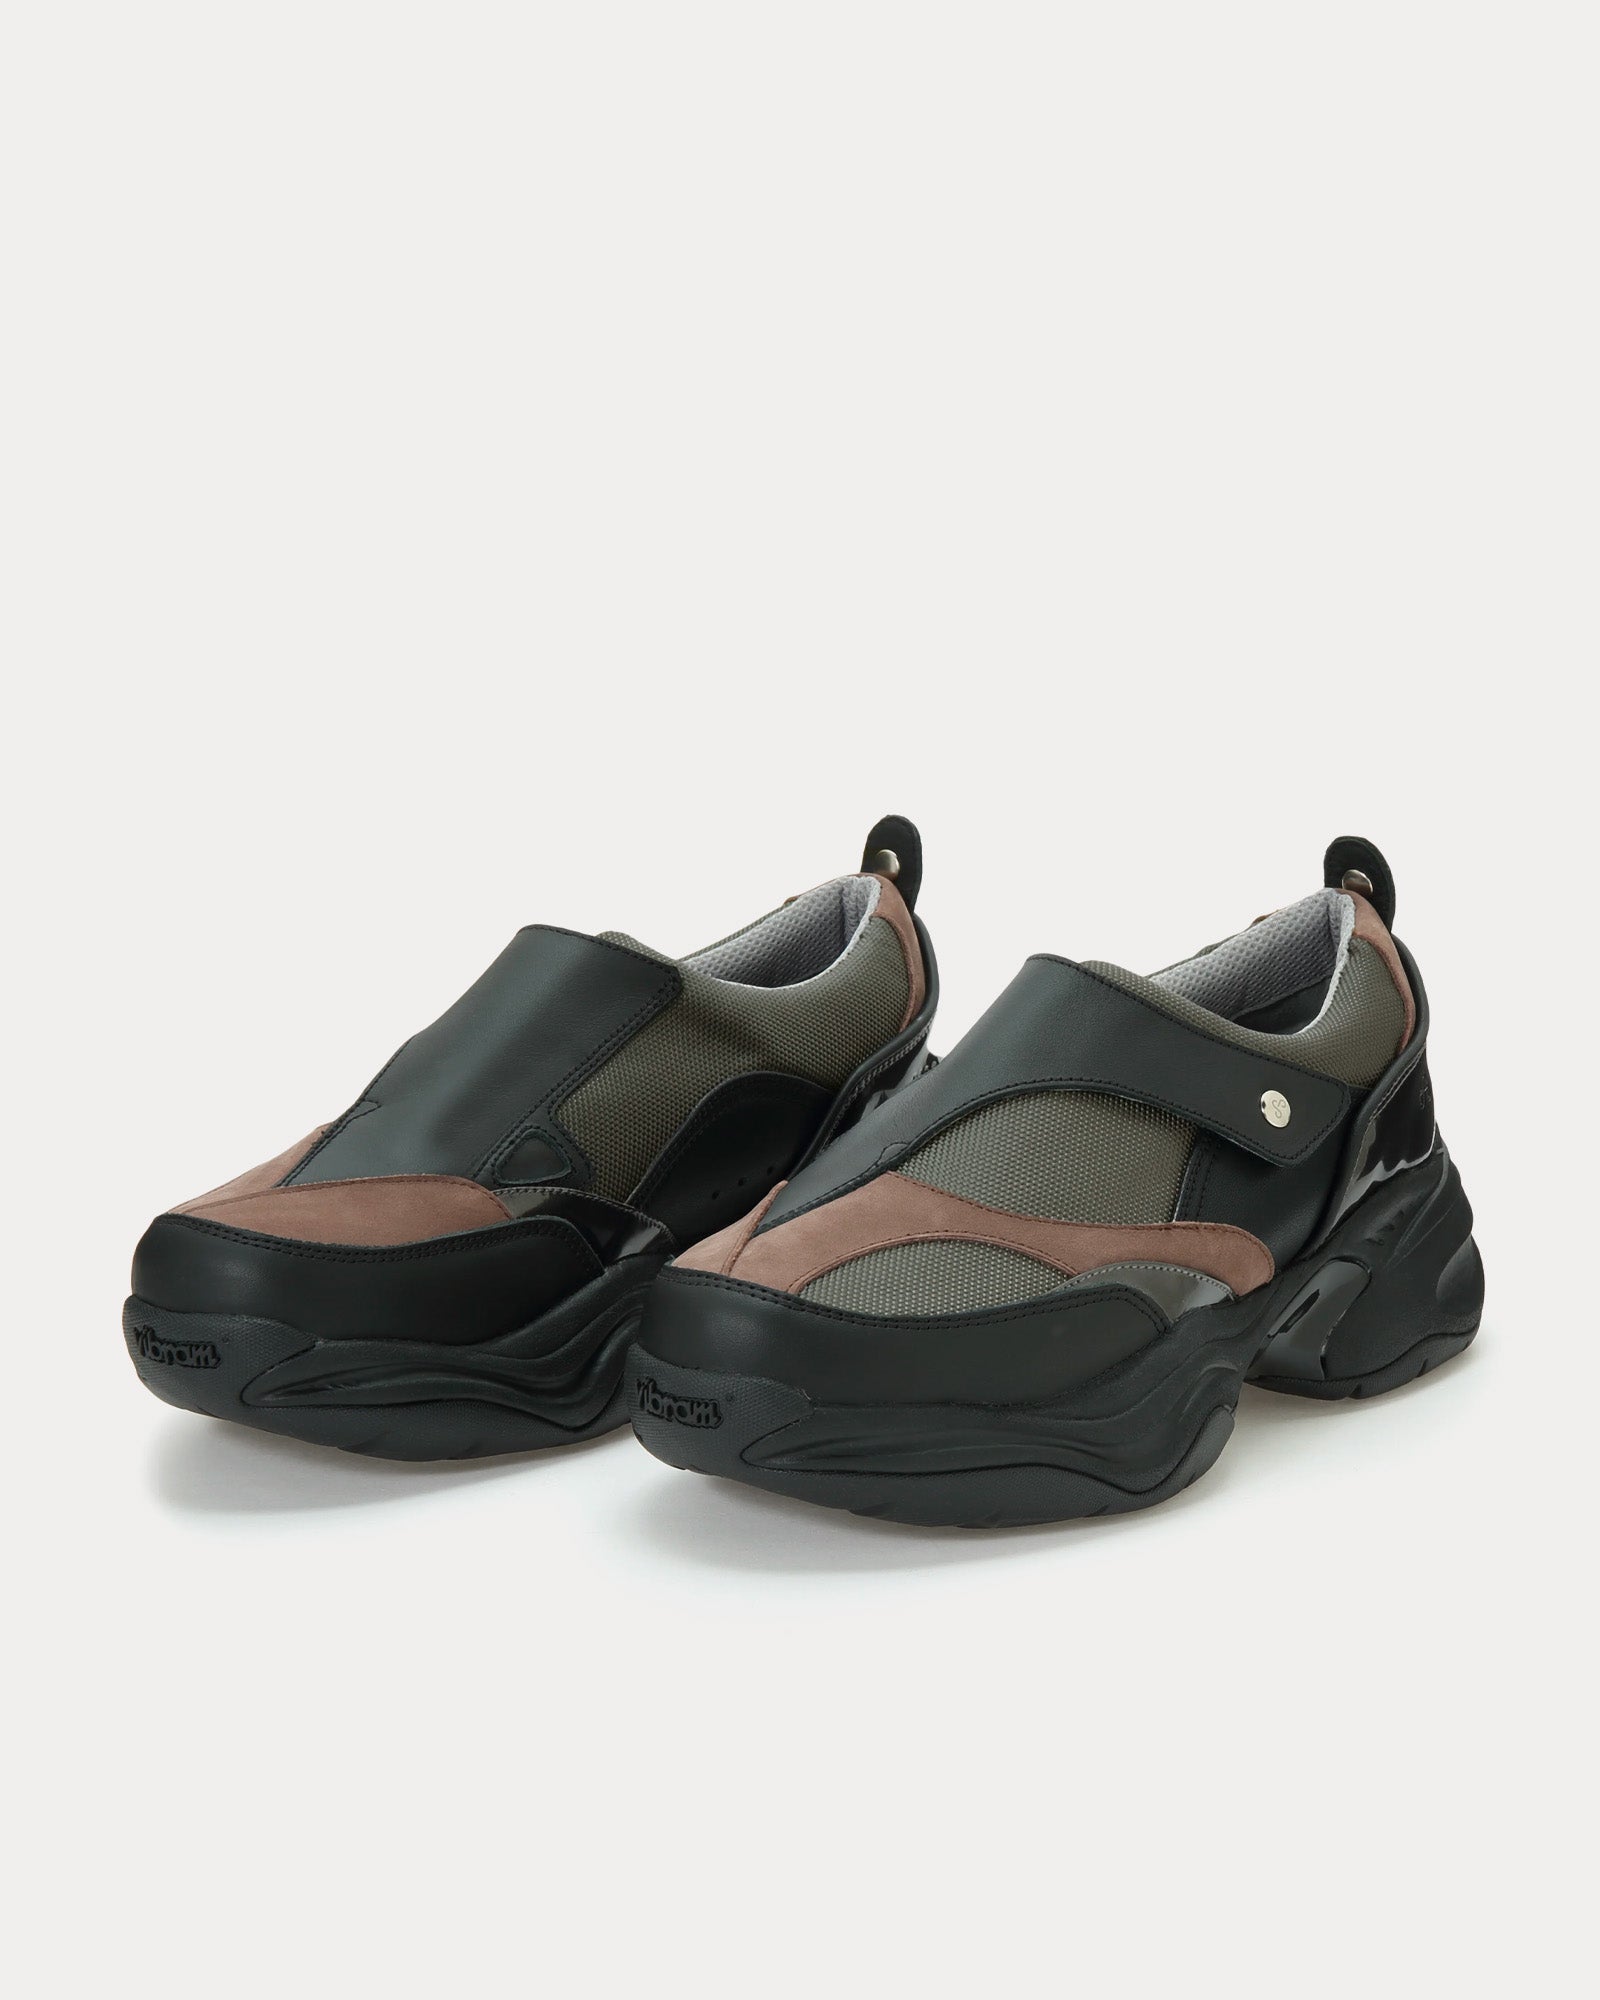 OAO - Shell Grey Slip On Sneakers